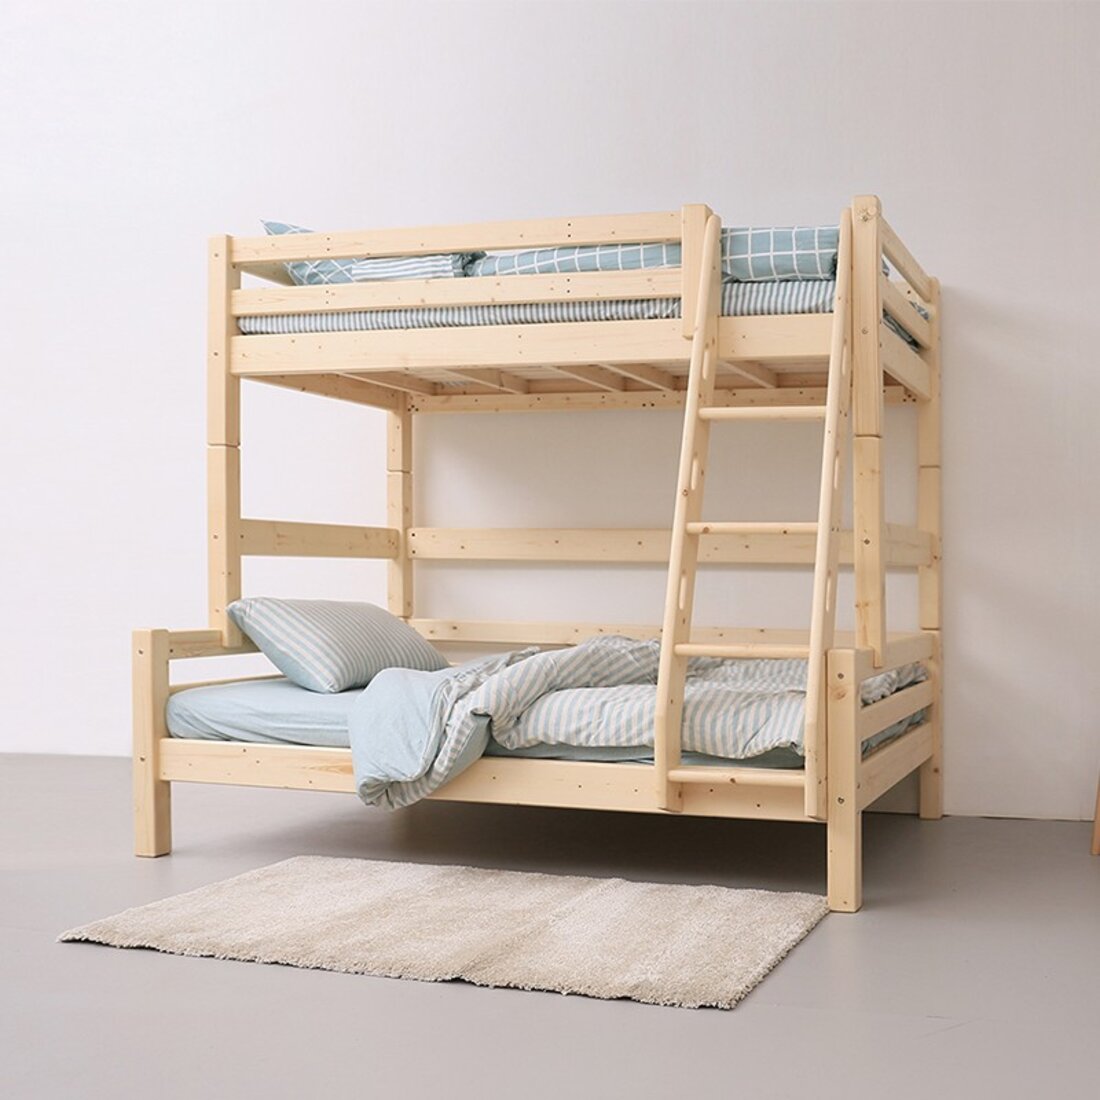 梦航家具 双层子母床 实木学生上下床 木质高低双层床 实木床定制-阿里巴巴